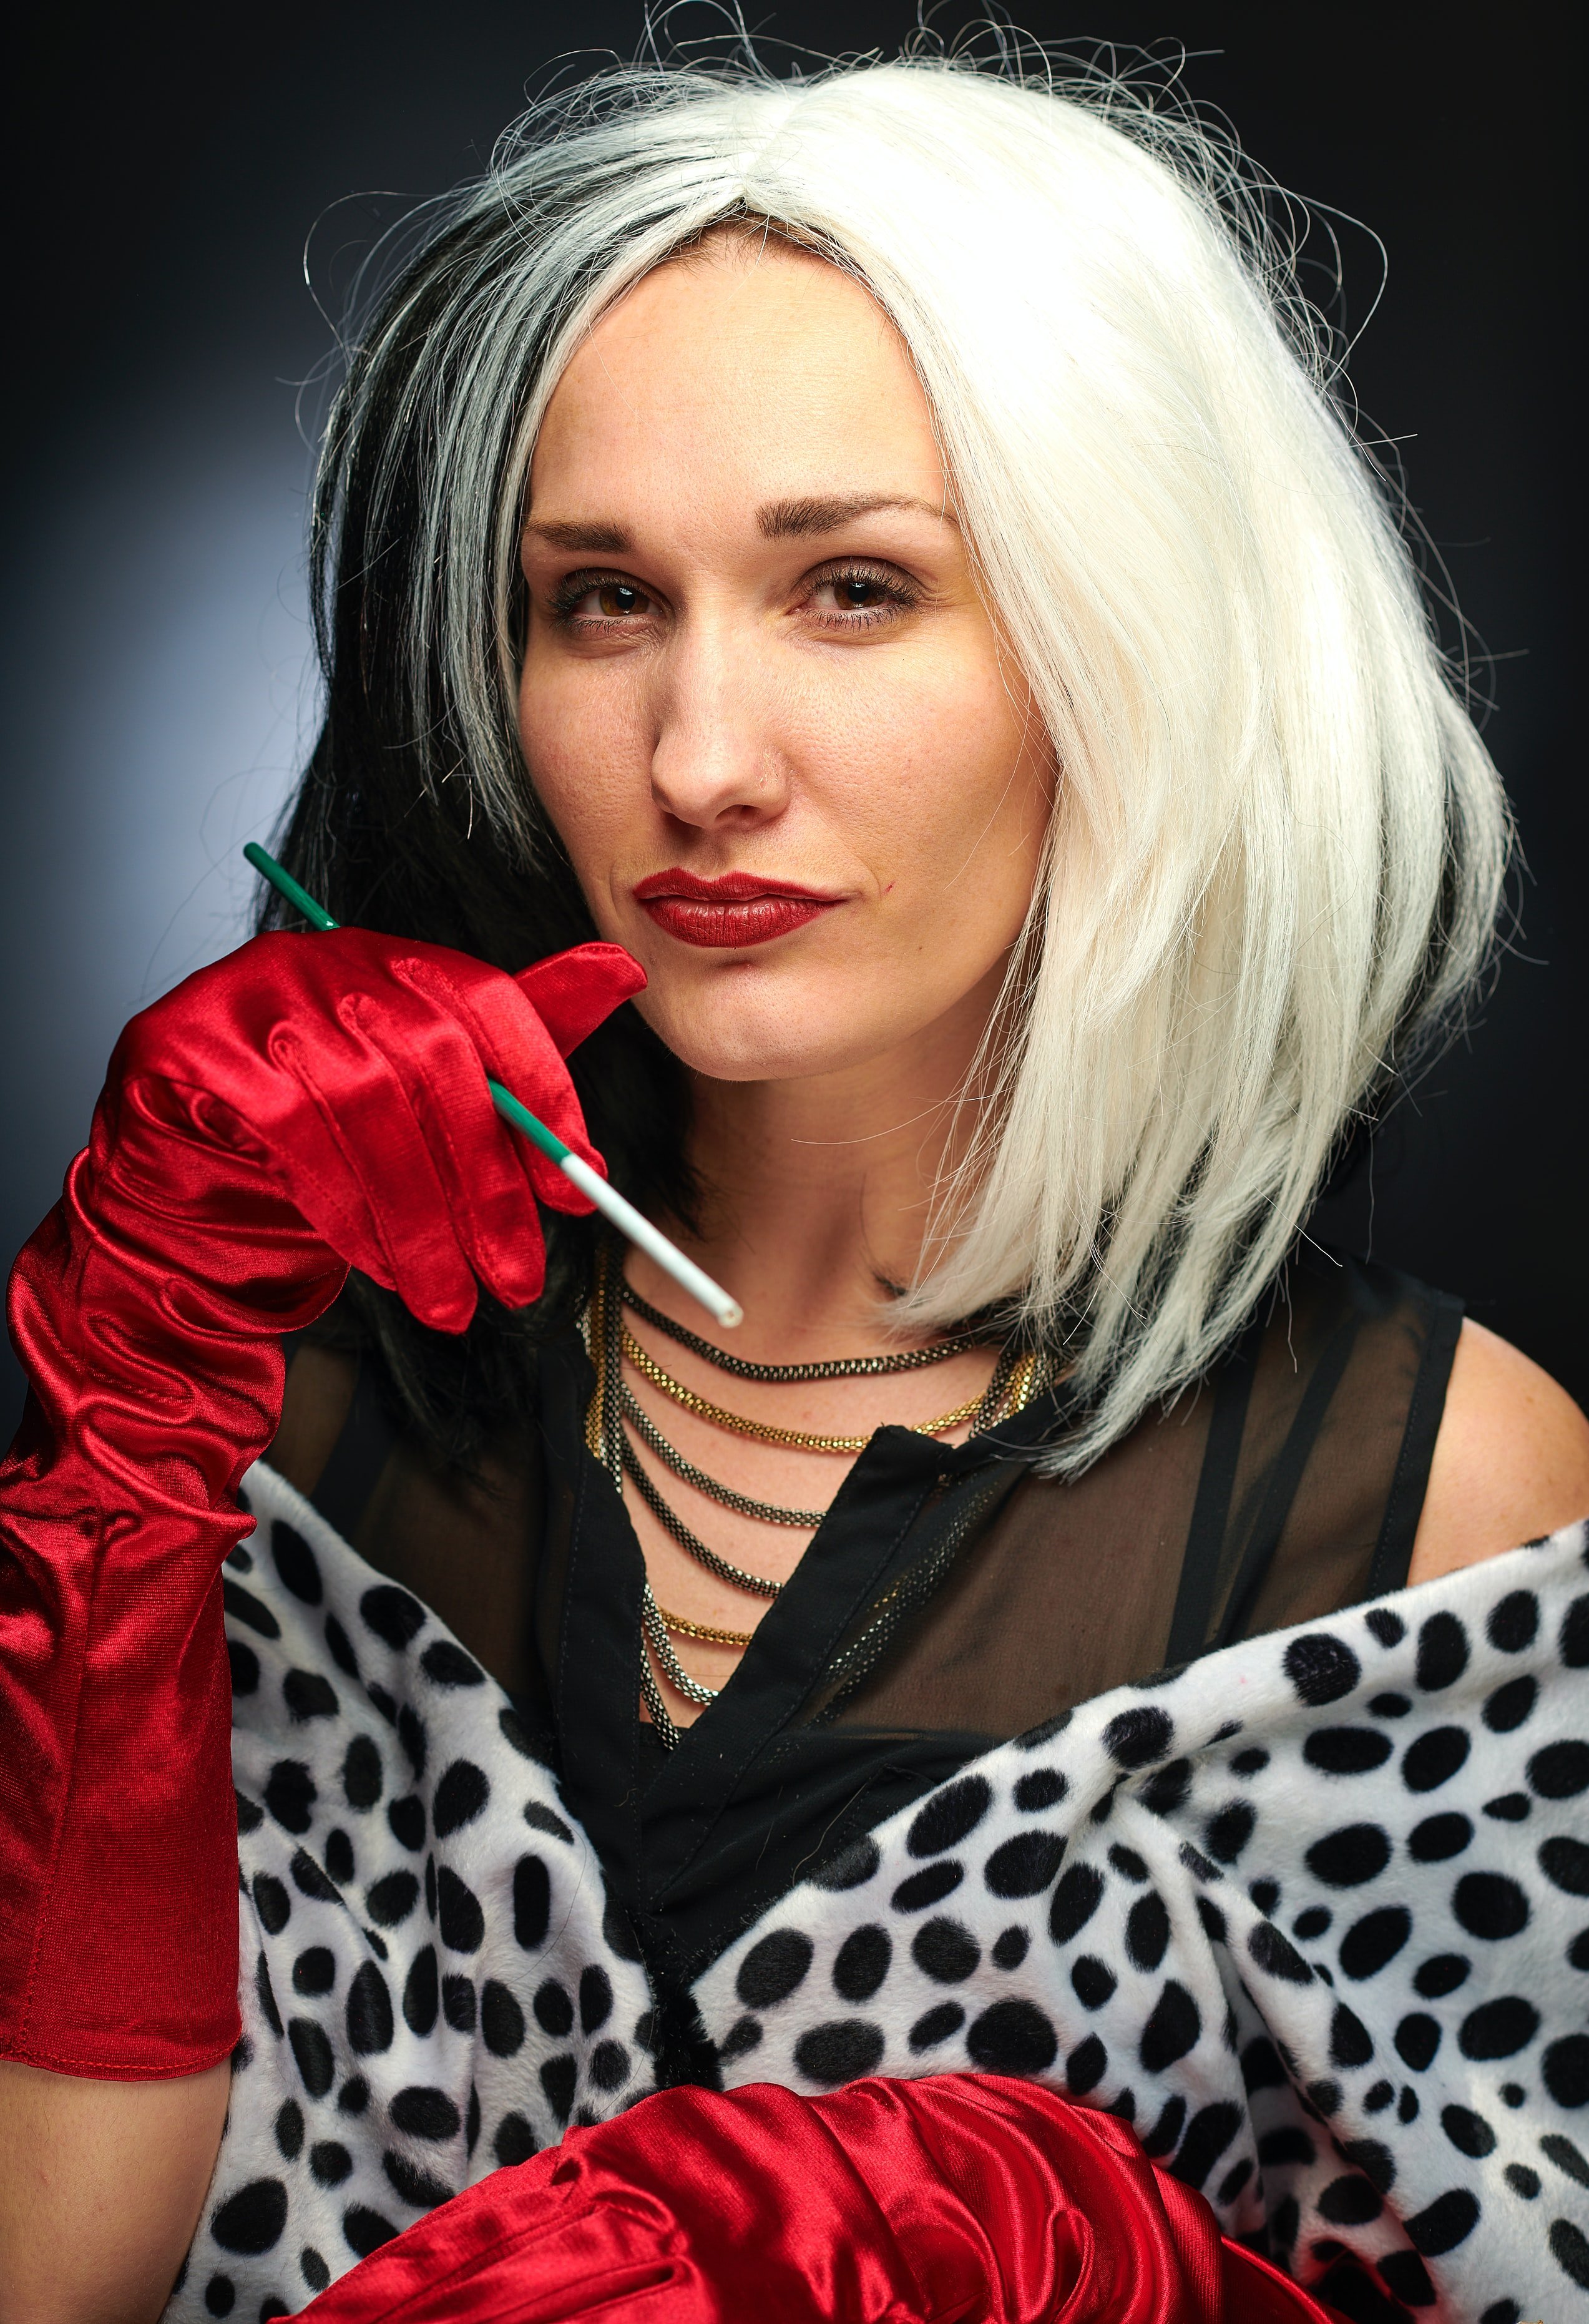 Mujer disfrazada de Cruella de Vil. | Foto: Unplash